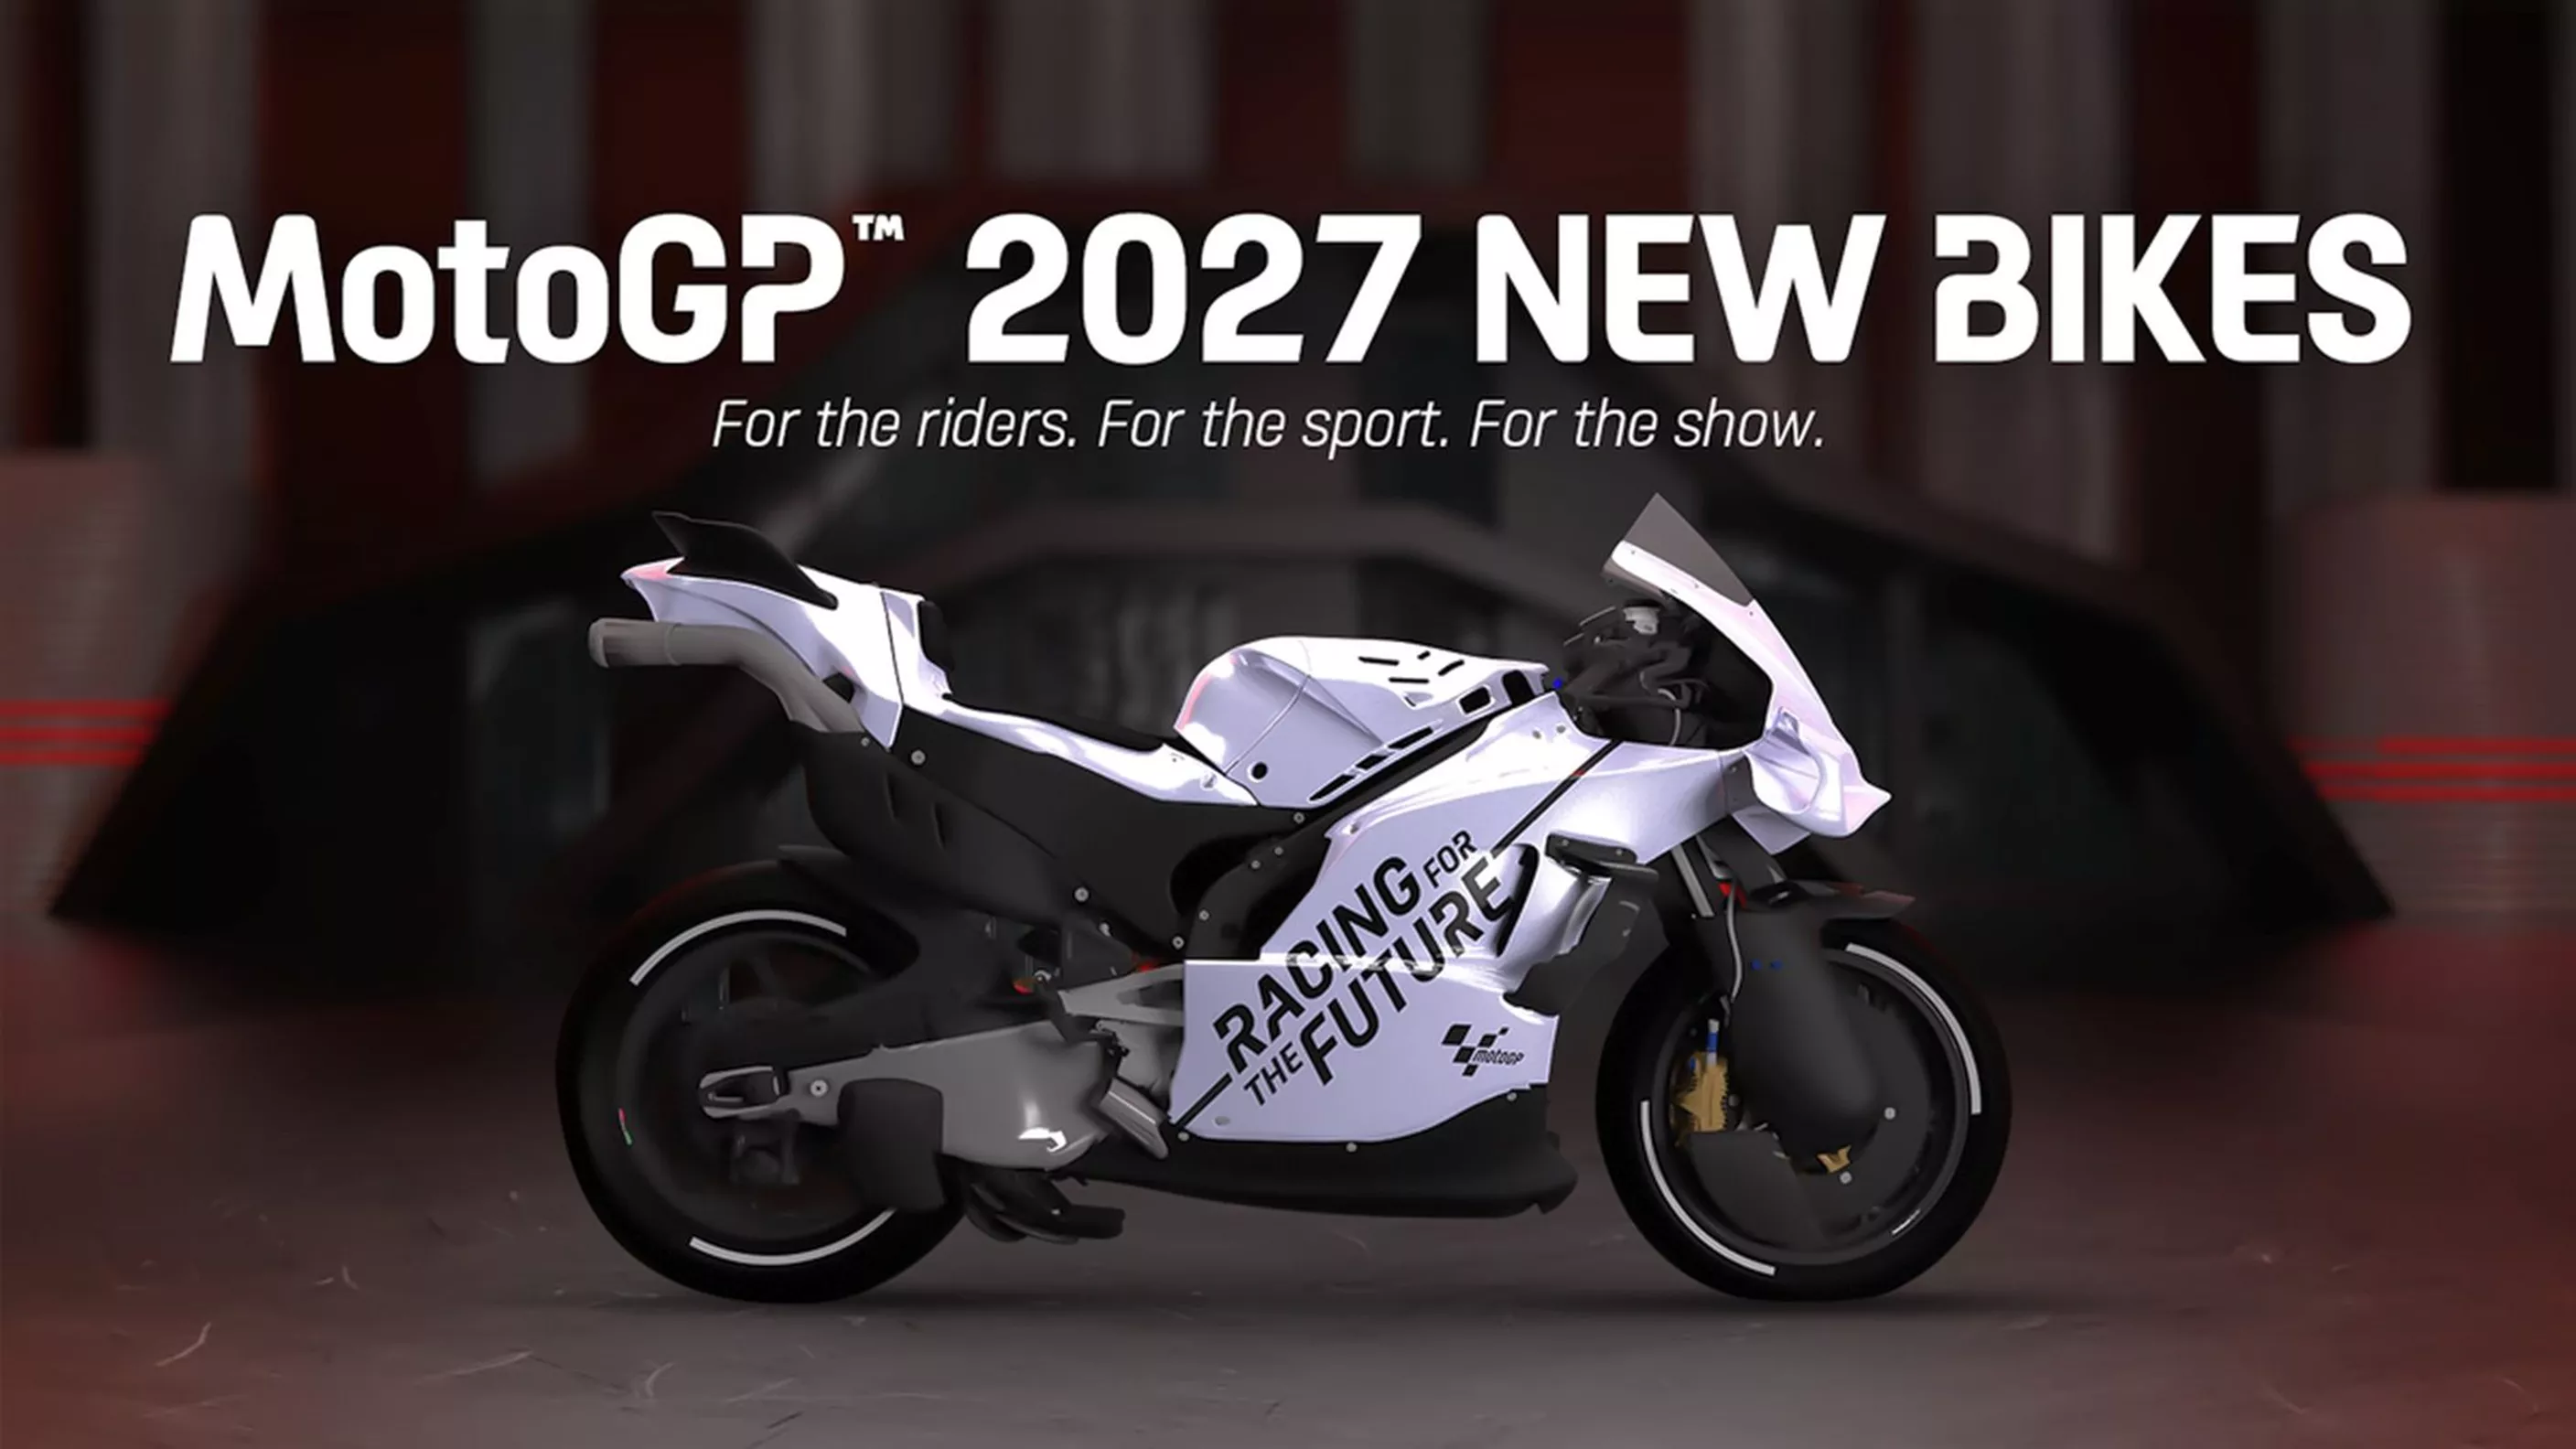 Předpisy MotoGP 2027 - Menší zdvihový objem, žádná světlá výška